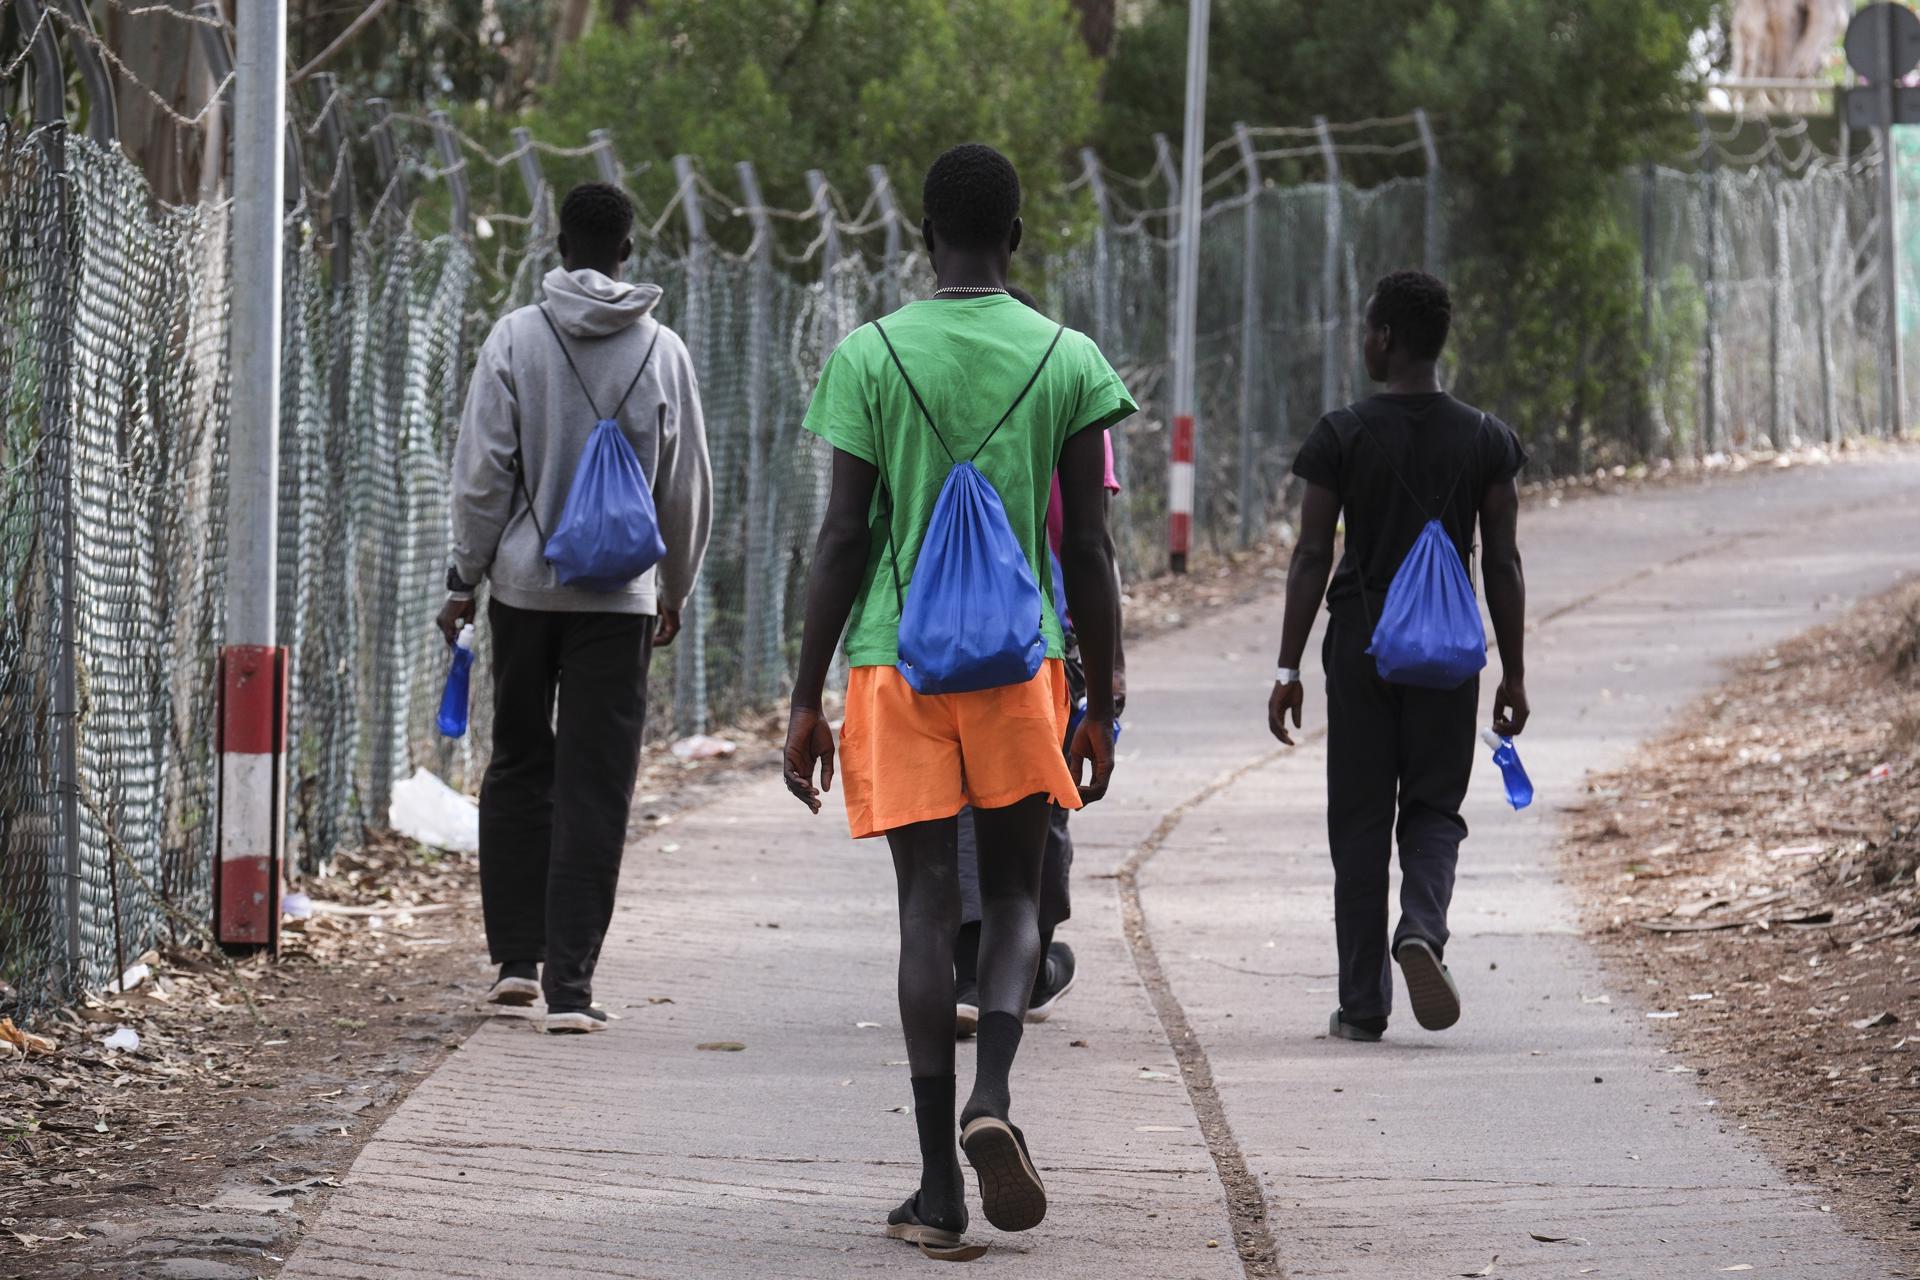 Cuatro jóvenes africanos caminan por el exterior del centro de acogida de Las Raíces, en La Laguna (Tenerife), donde han sido alojados buena parte de las personas que han llegado en los últimos días en cayuco a El Hierro.EFE/Alberto Valdés